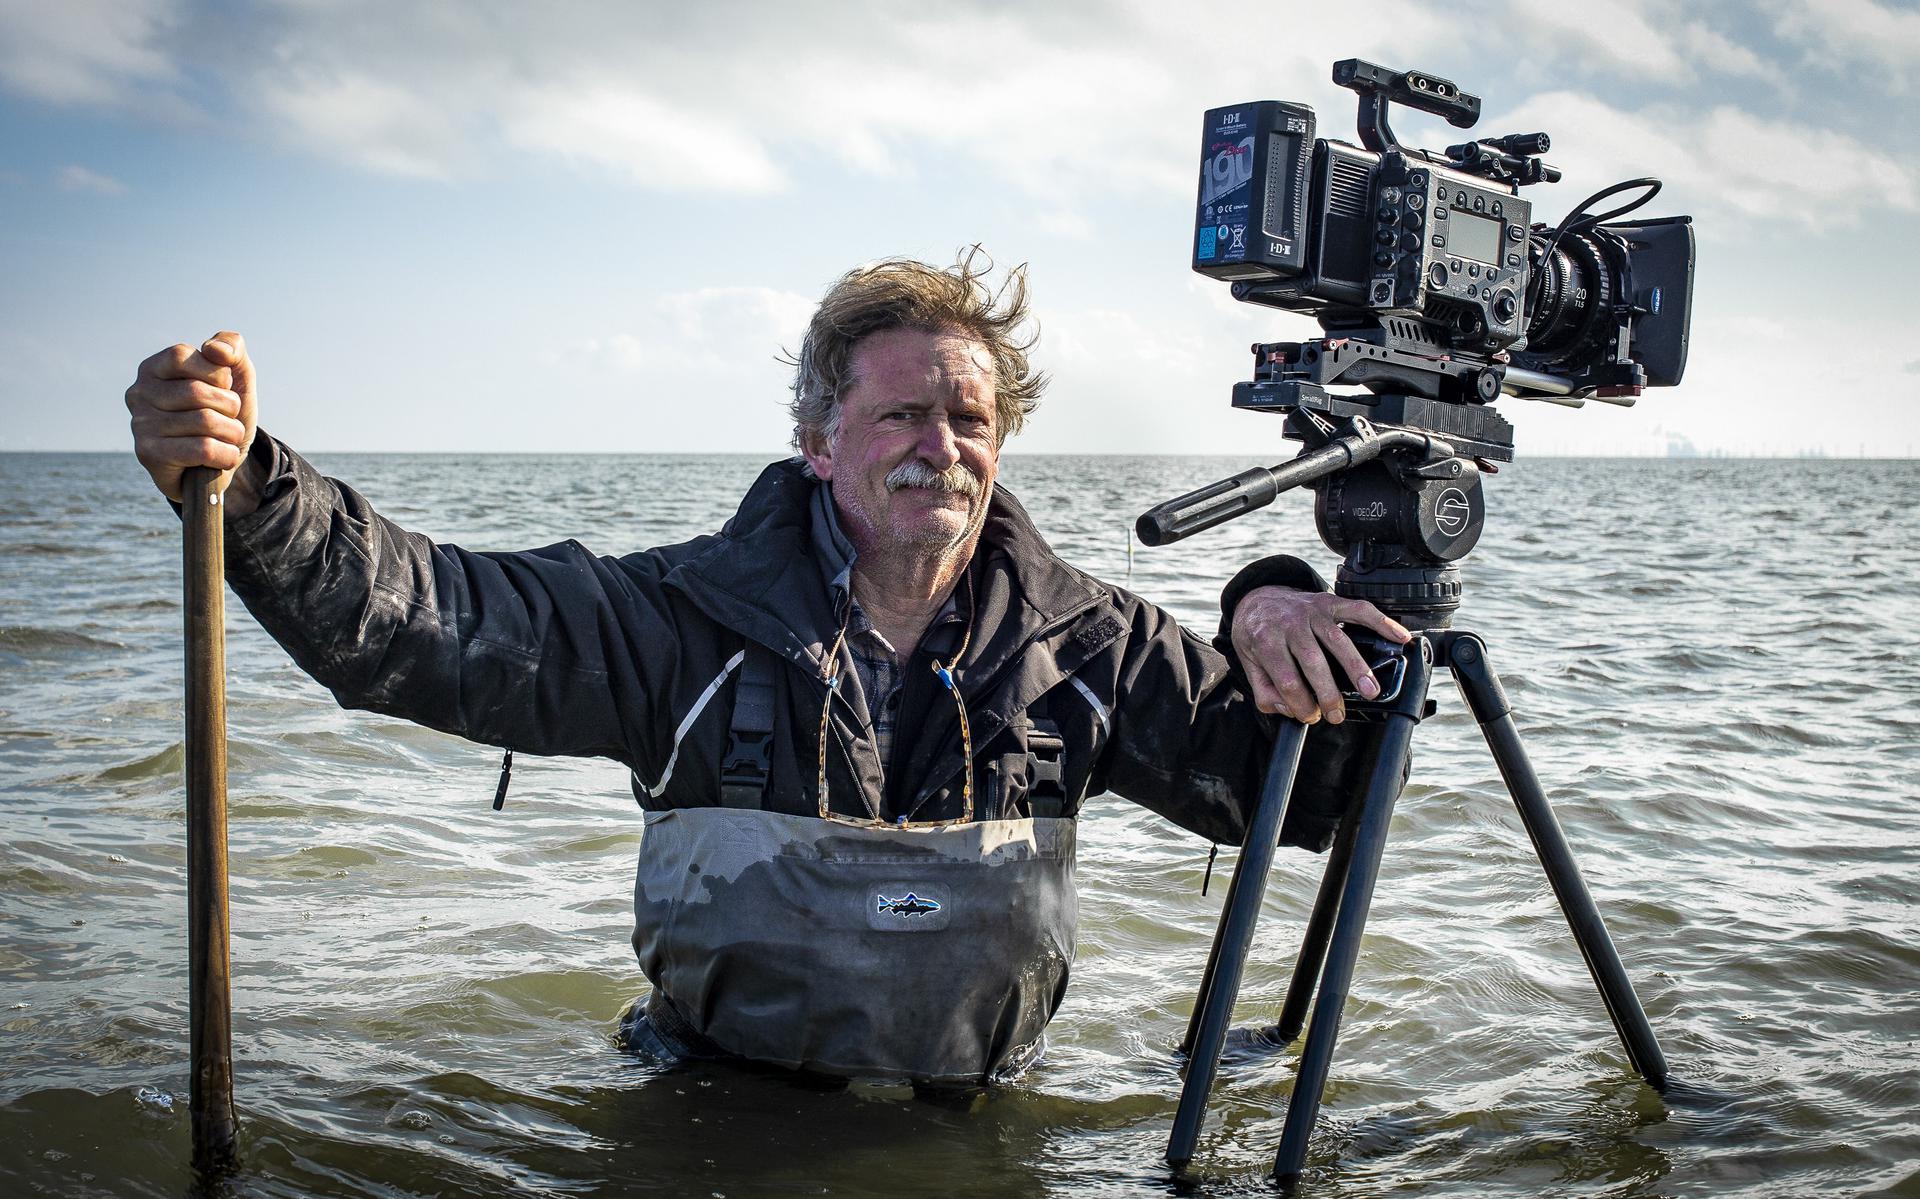 Filmmaker-fotograaf Pieter-Rim de Kroon in actie.